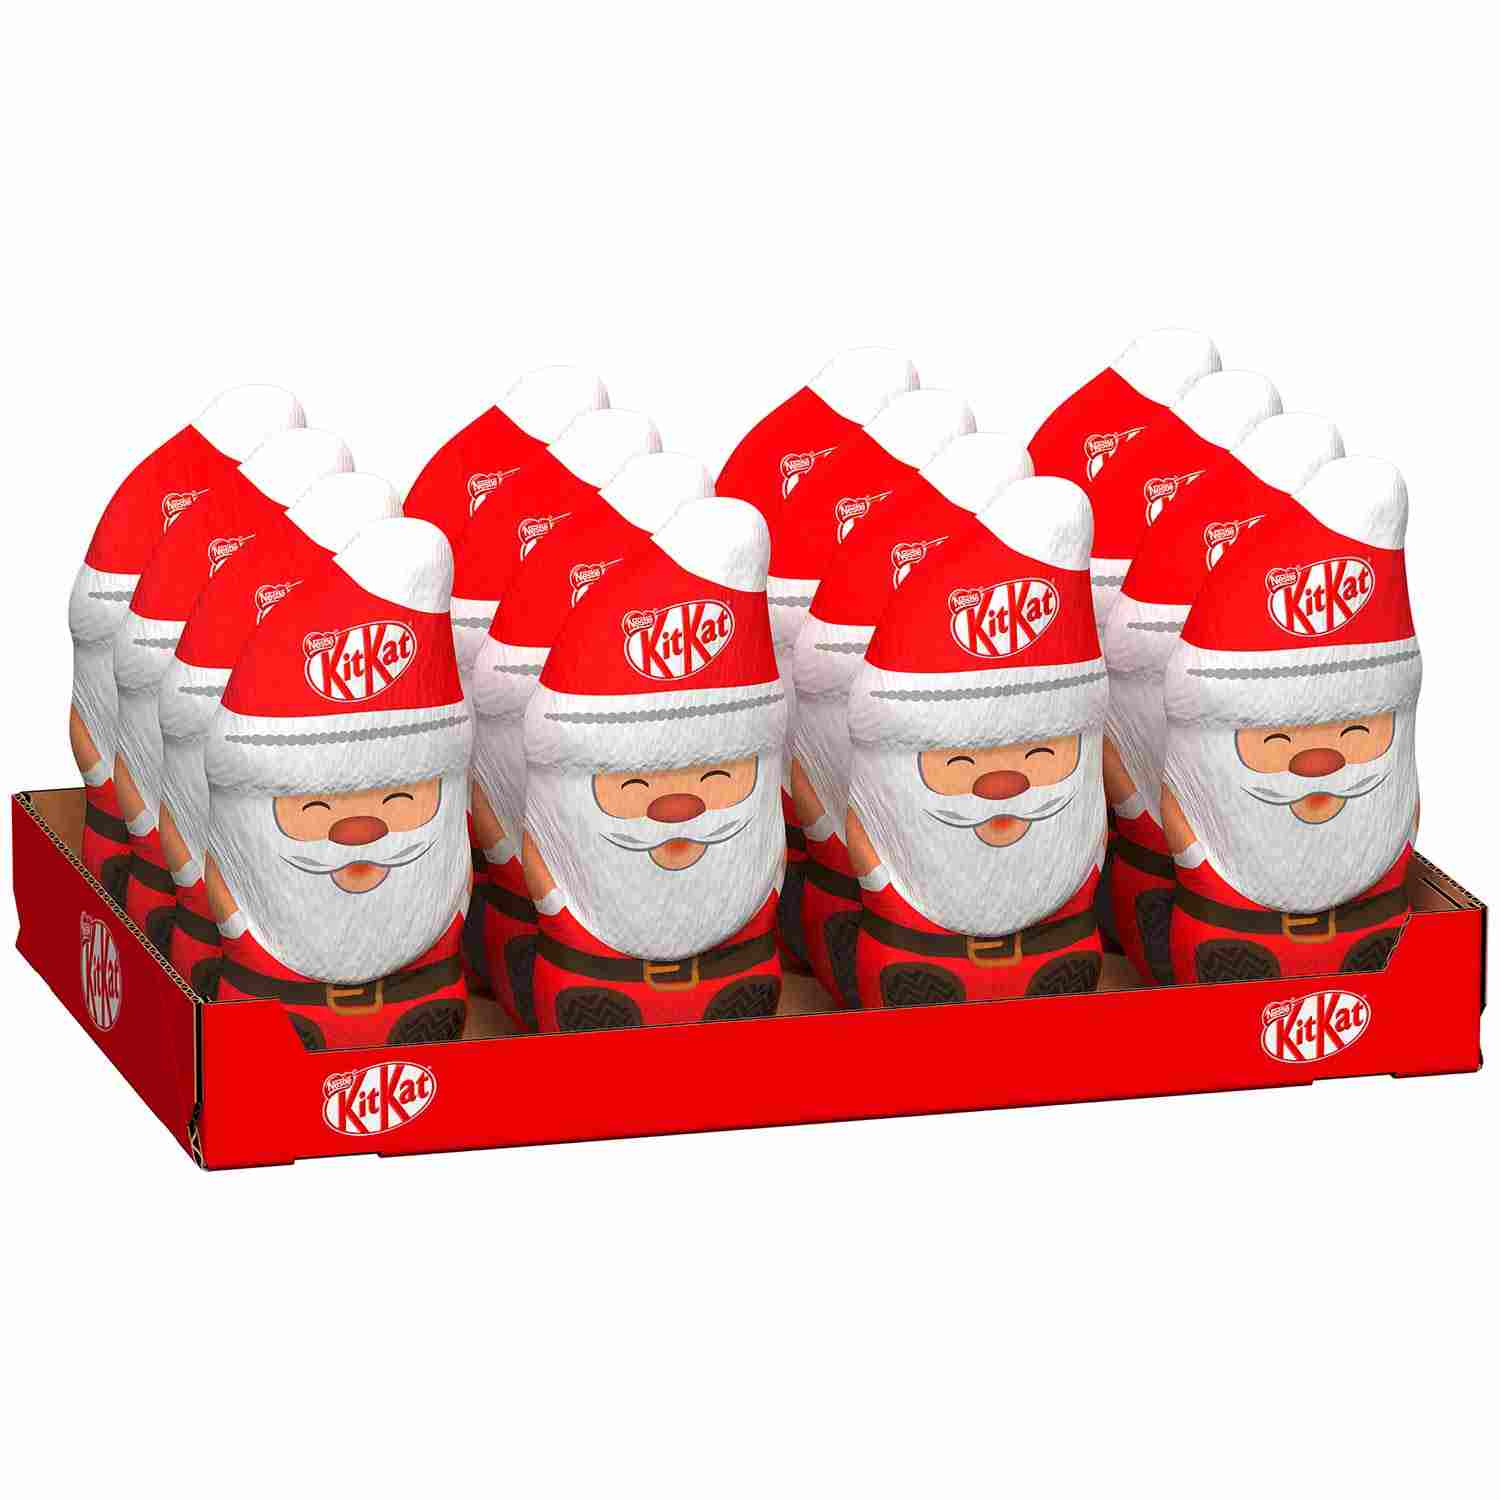 Czekoladowy Mikołaj figurka Święta Bożego Narodzenia Kit Kat 85g z Niemiec